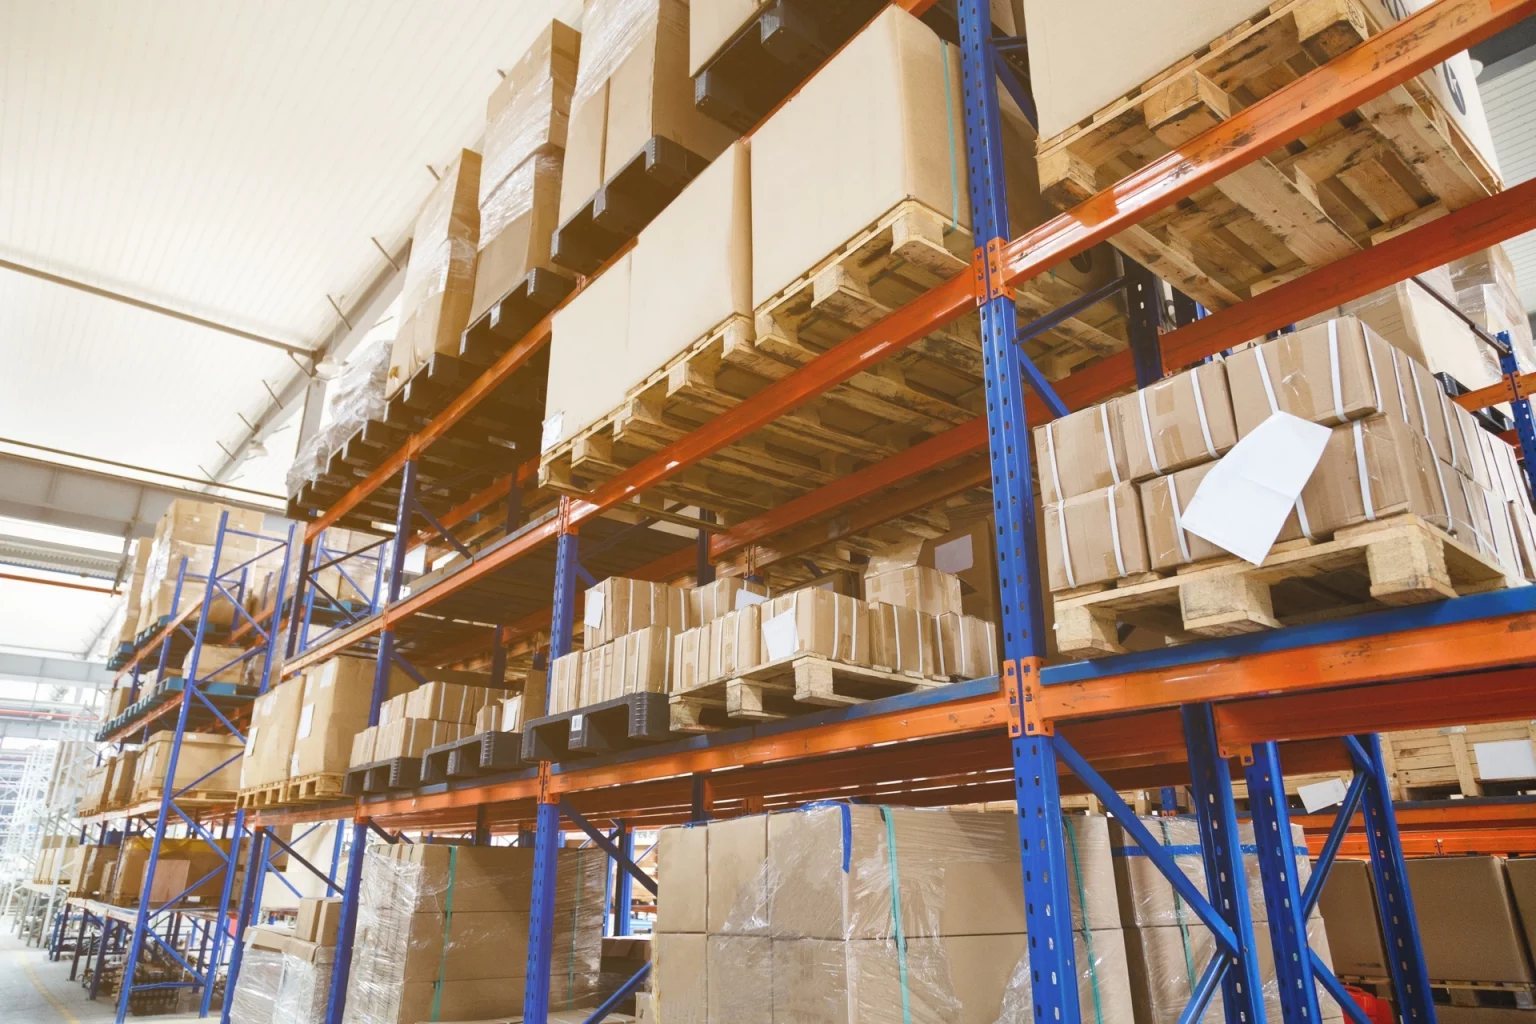 Étagères d'entrepôt chargées de cartons et palettes, illustrant un système de stockage ordonné pour la gestion des marchandises.